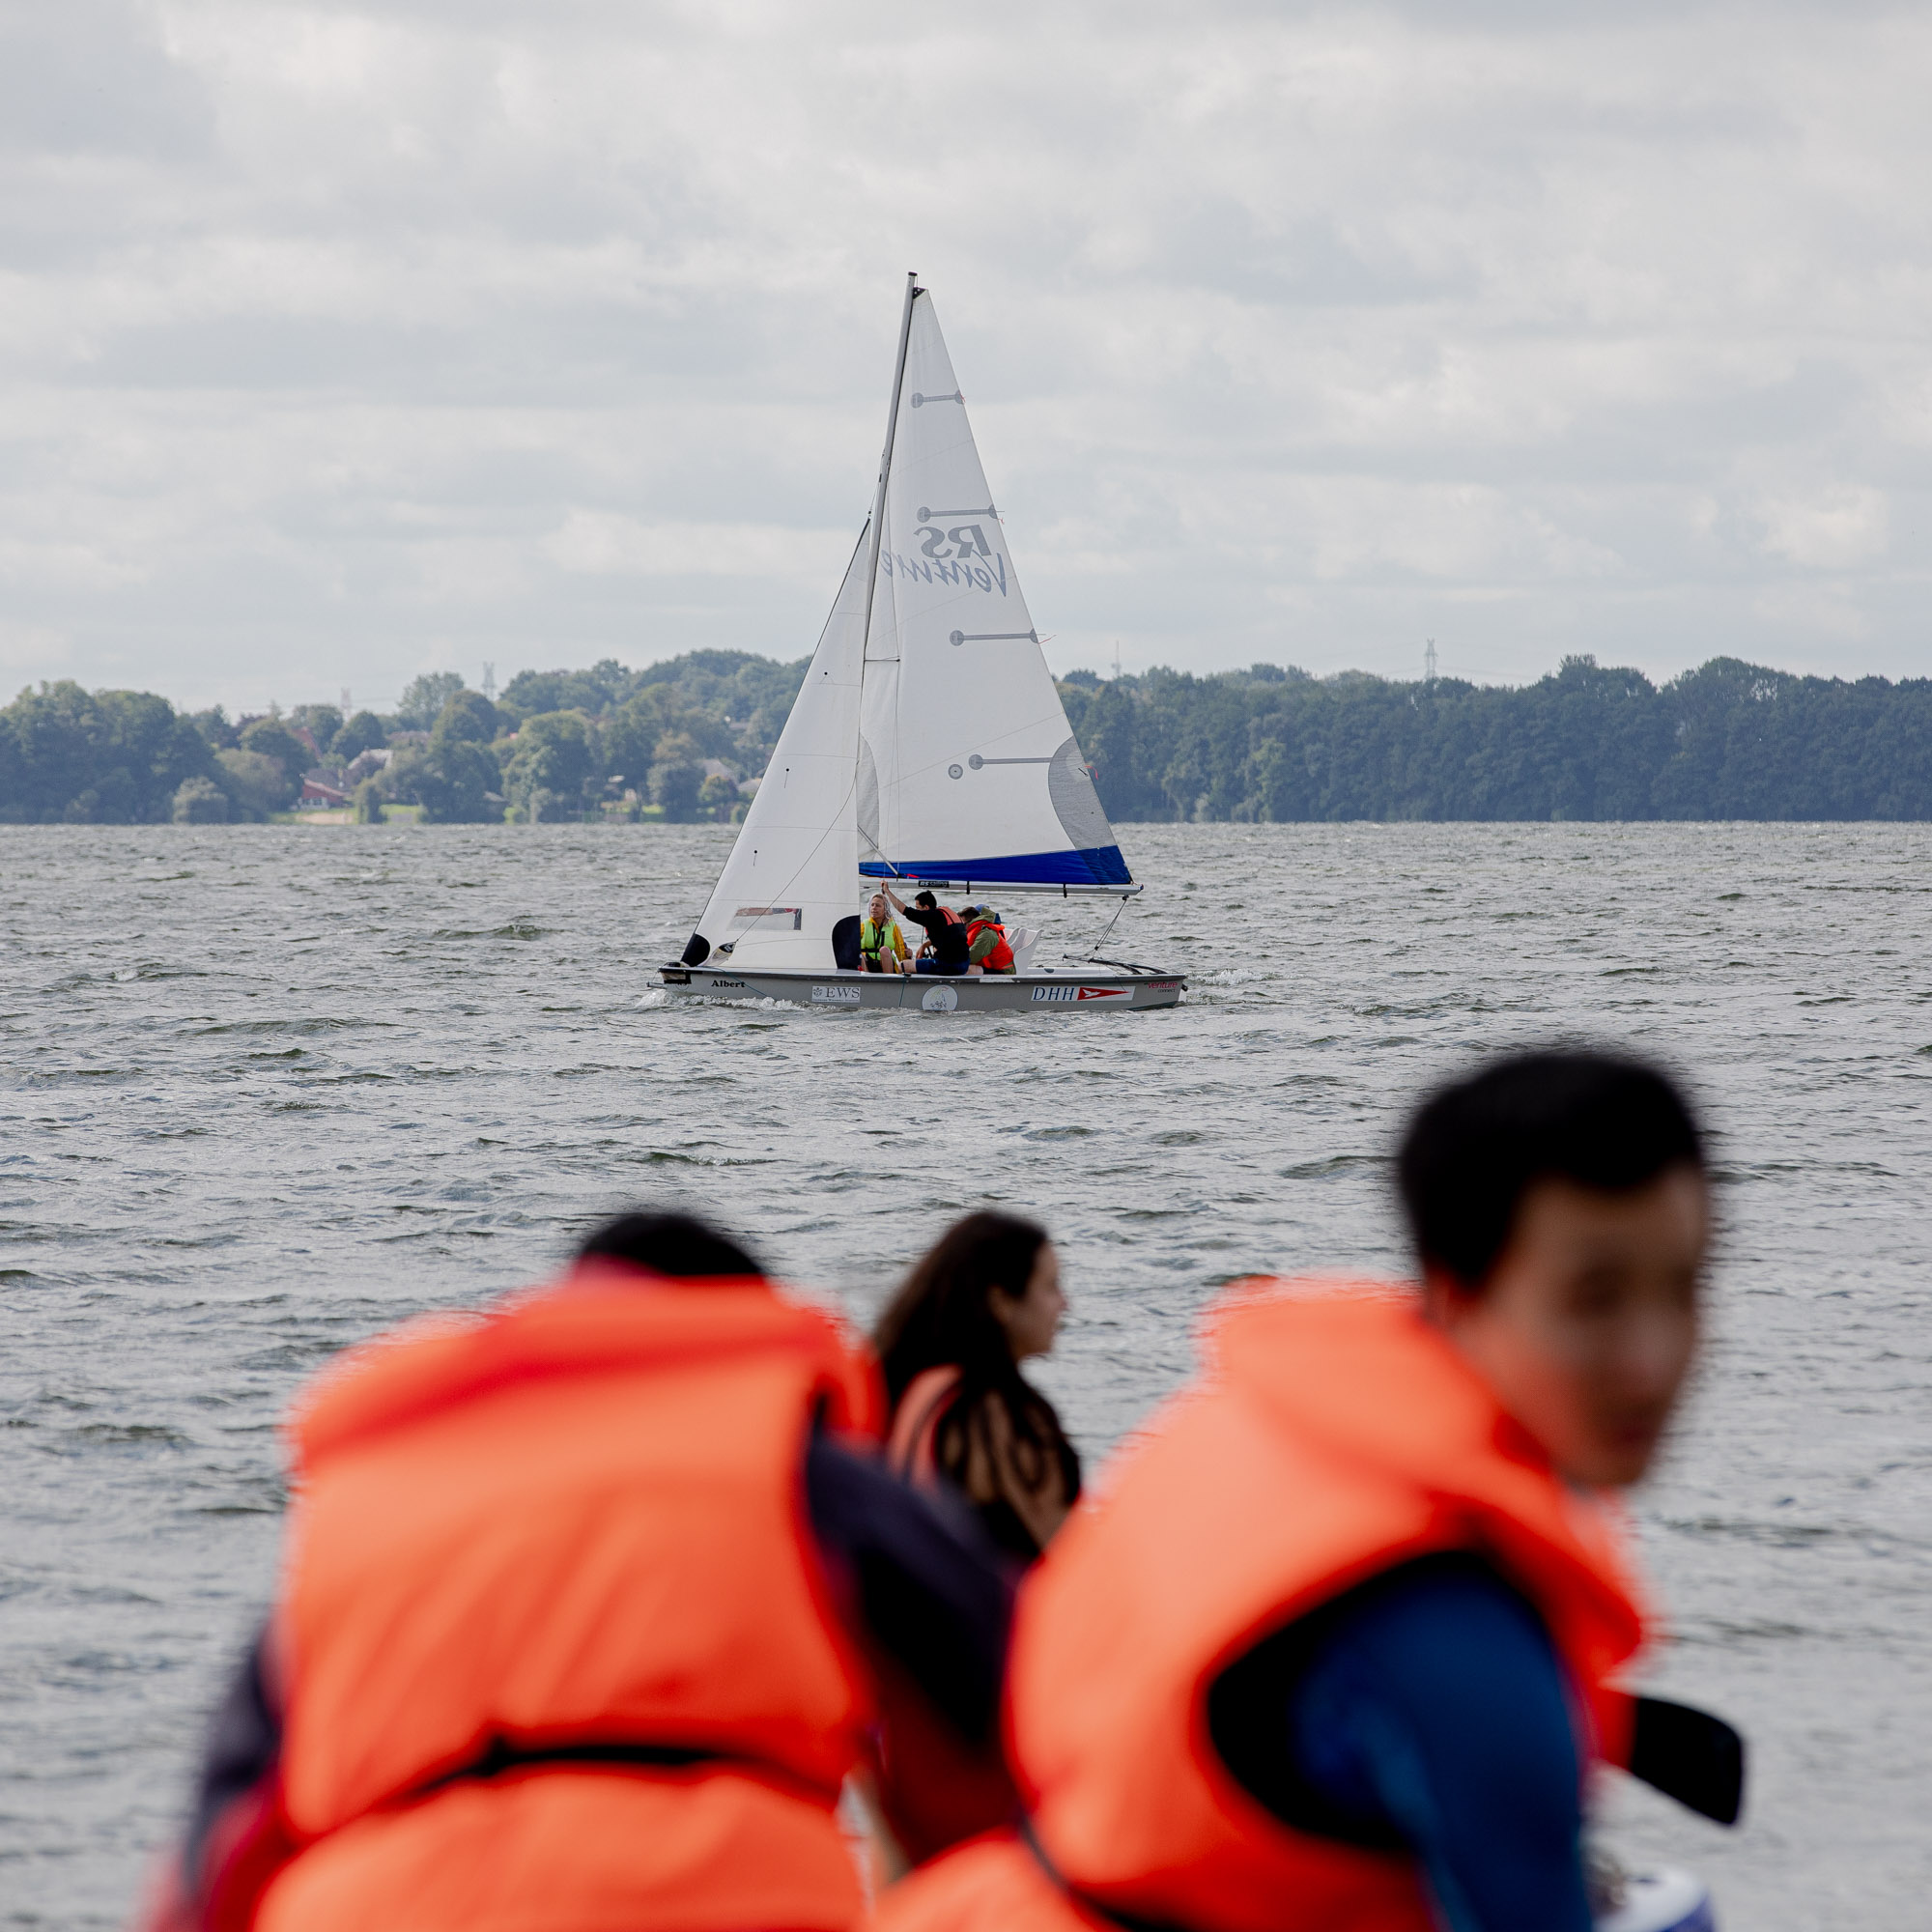 Im Vordergrund sieht man unscharf zwei Personen mit orangen Rettungswesten. Eine Person blick Richtung Kamera. Im Hintergrund sieht man ein Segelboot mit einem weißen Segel auf einem See. Auf dem Segelboot sind Menschen zu sehen.